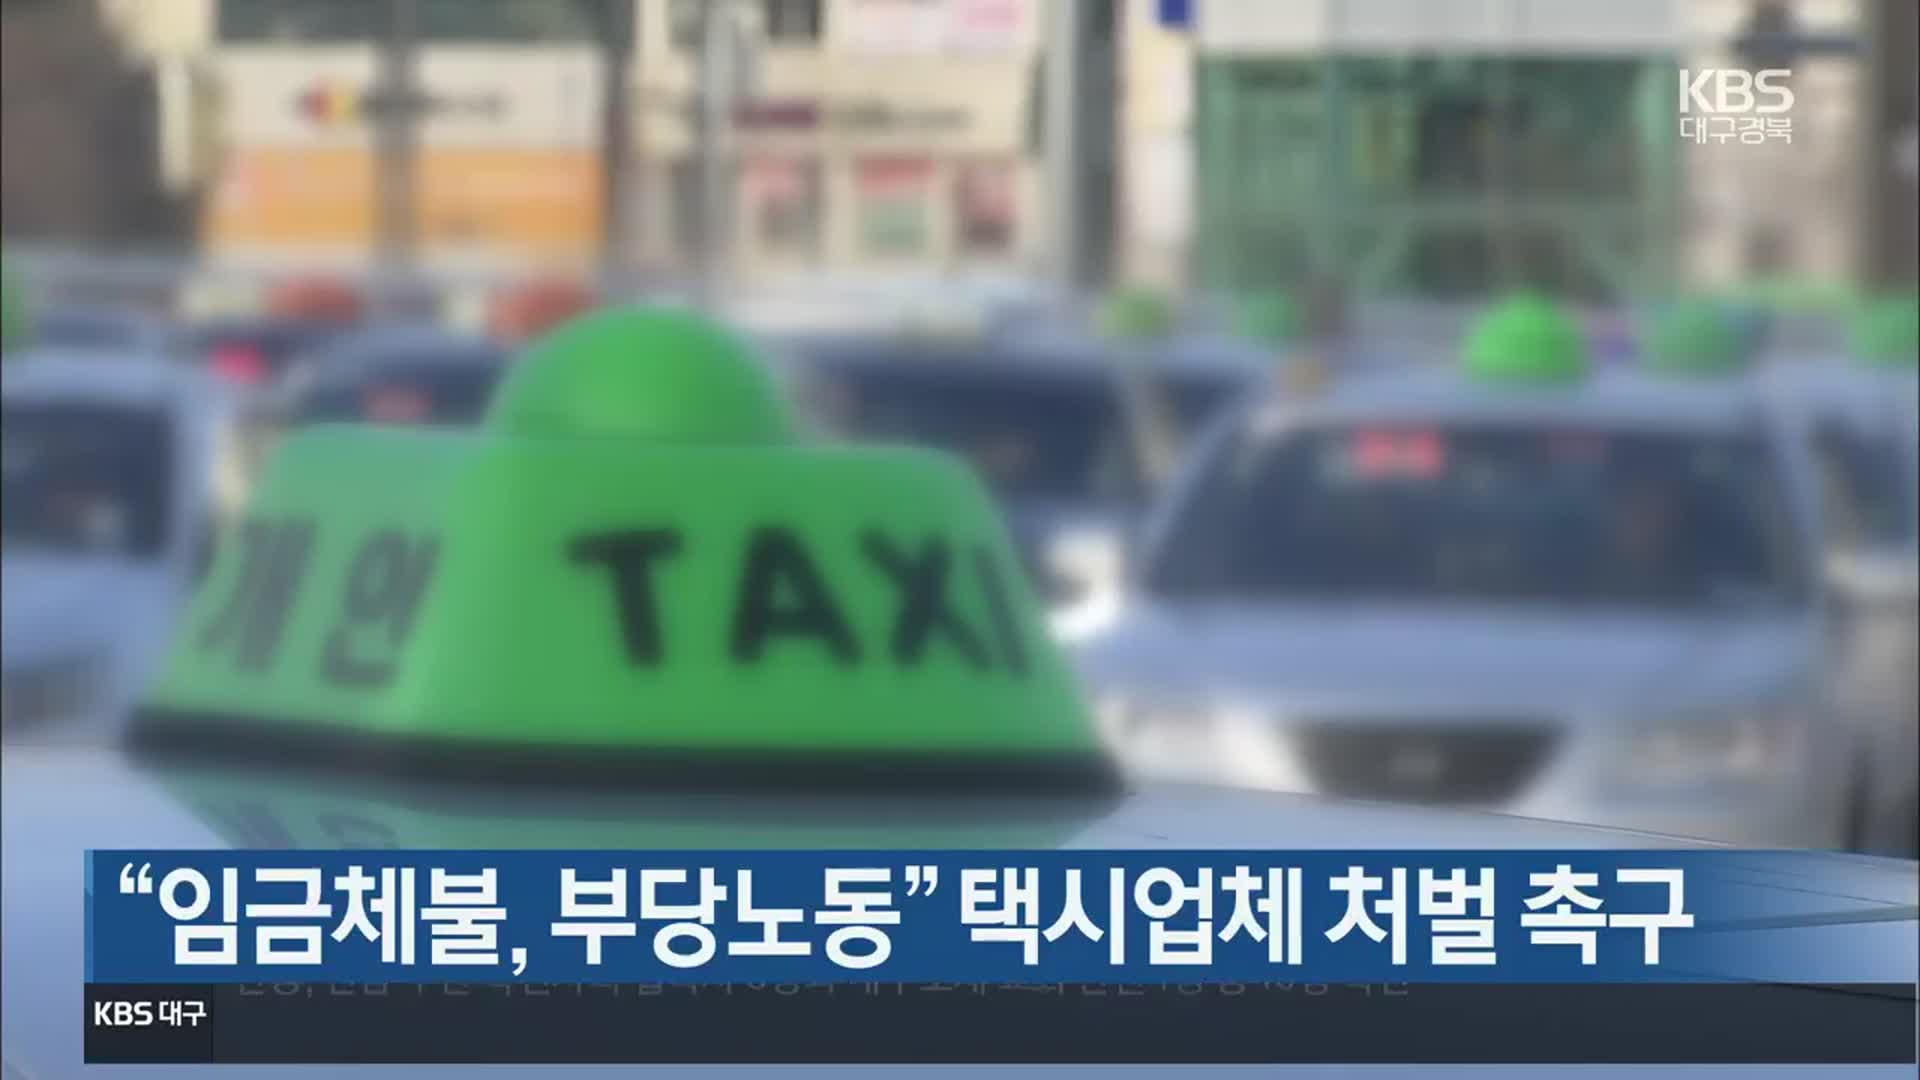 “임금체불, 부당노동” 택시업체 처벌 촉구